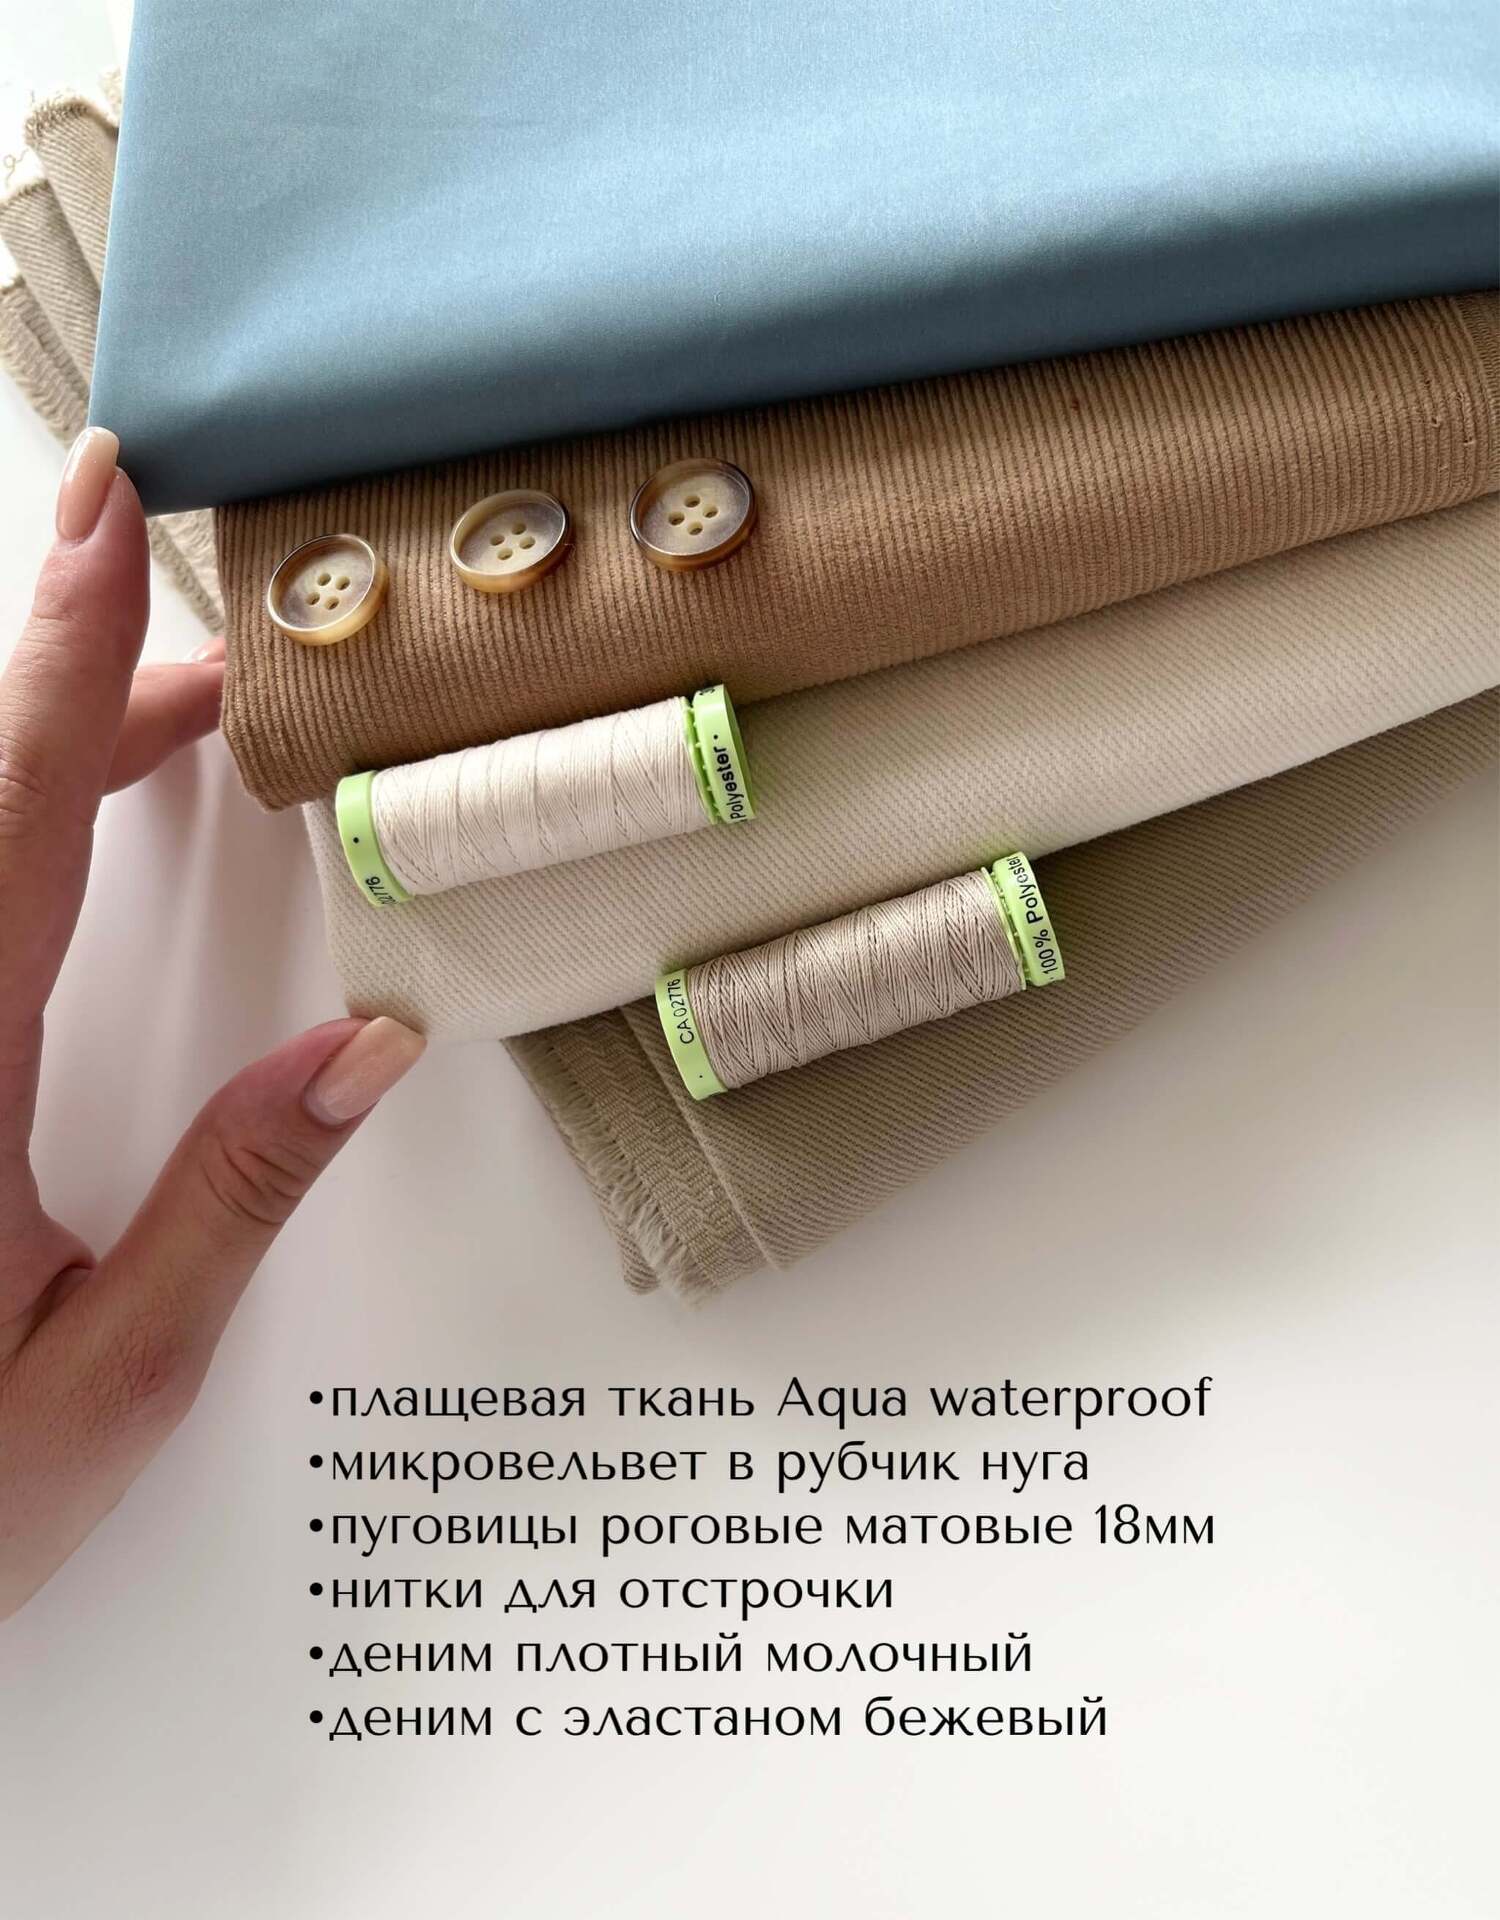 Плащевая ткань Aqua waterproof